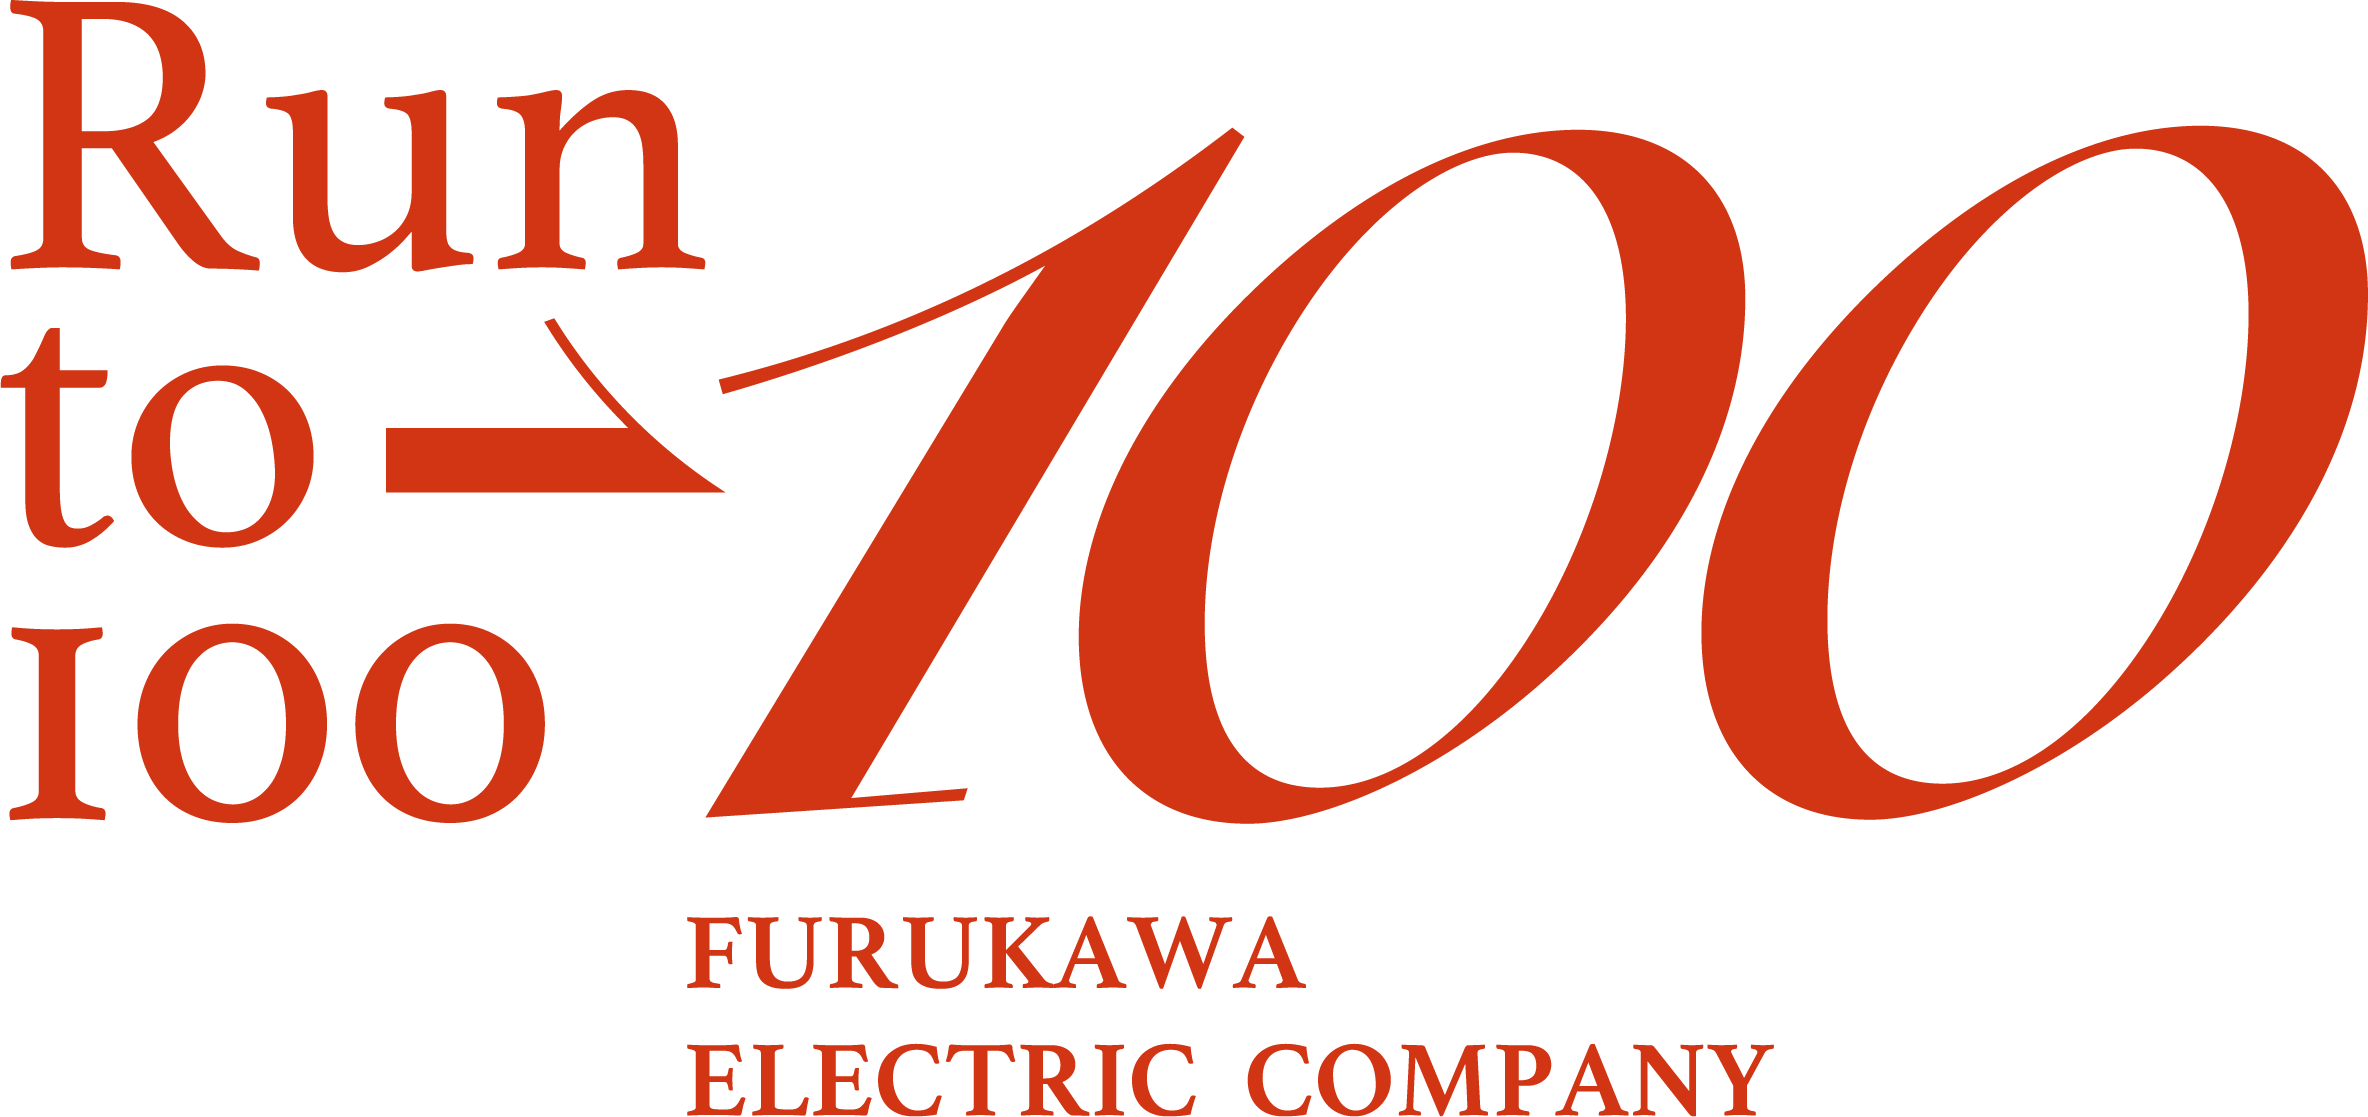 FURUKAWA ELECTRIC COMPANY 希望と発展の100周年を目指して。